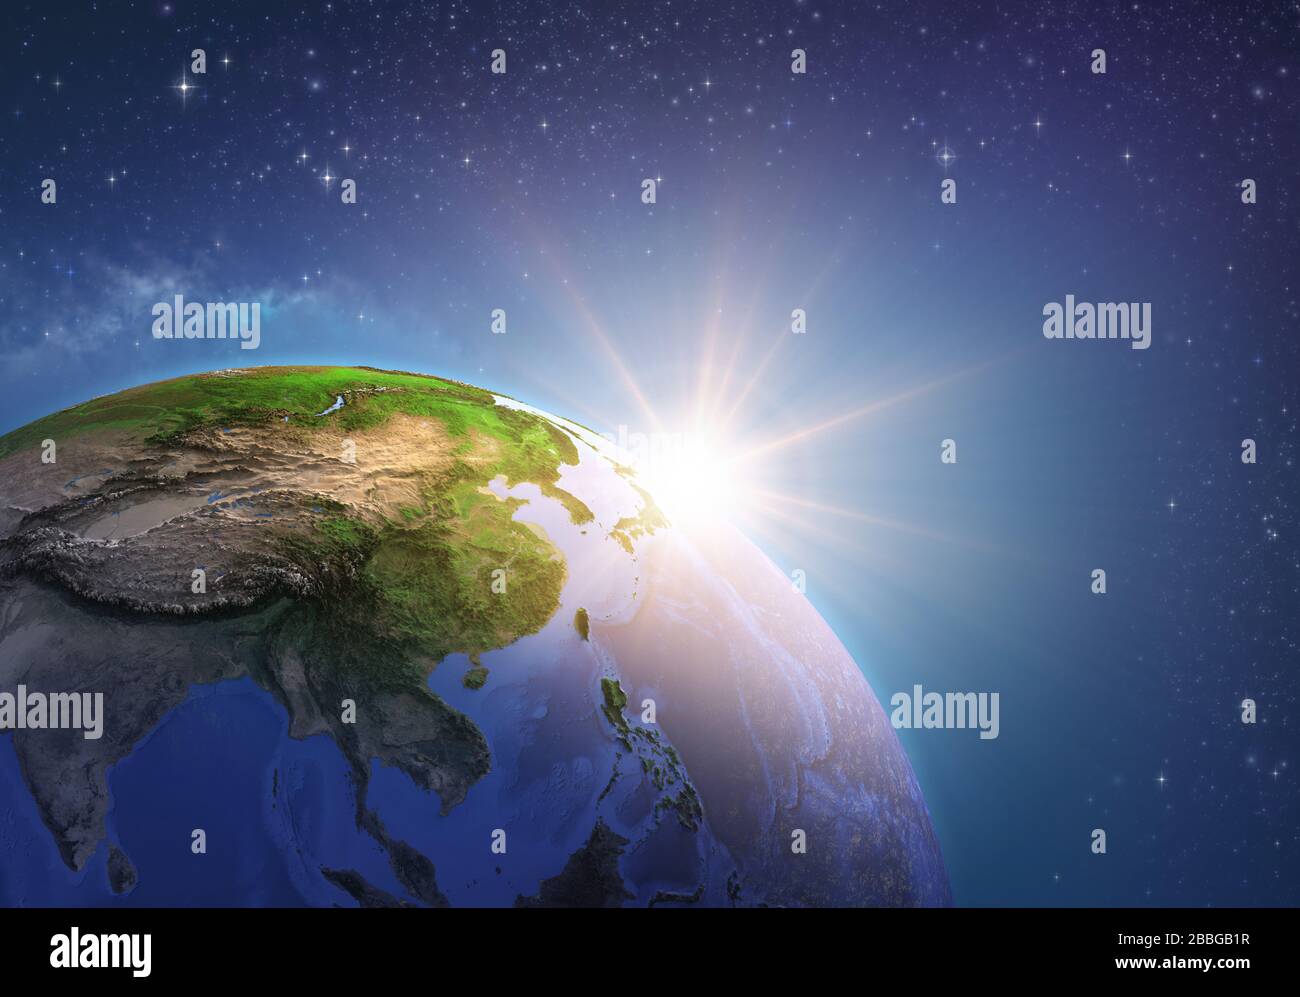 Surface de la planète Terre vue d'un satellite, focalisé sur l'Asie de l'est, le soleil monte à l'horizon. Carte physique de la Chine et de la Mongolie. Illustrateur en relief Banque D'Images